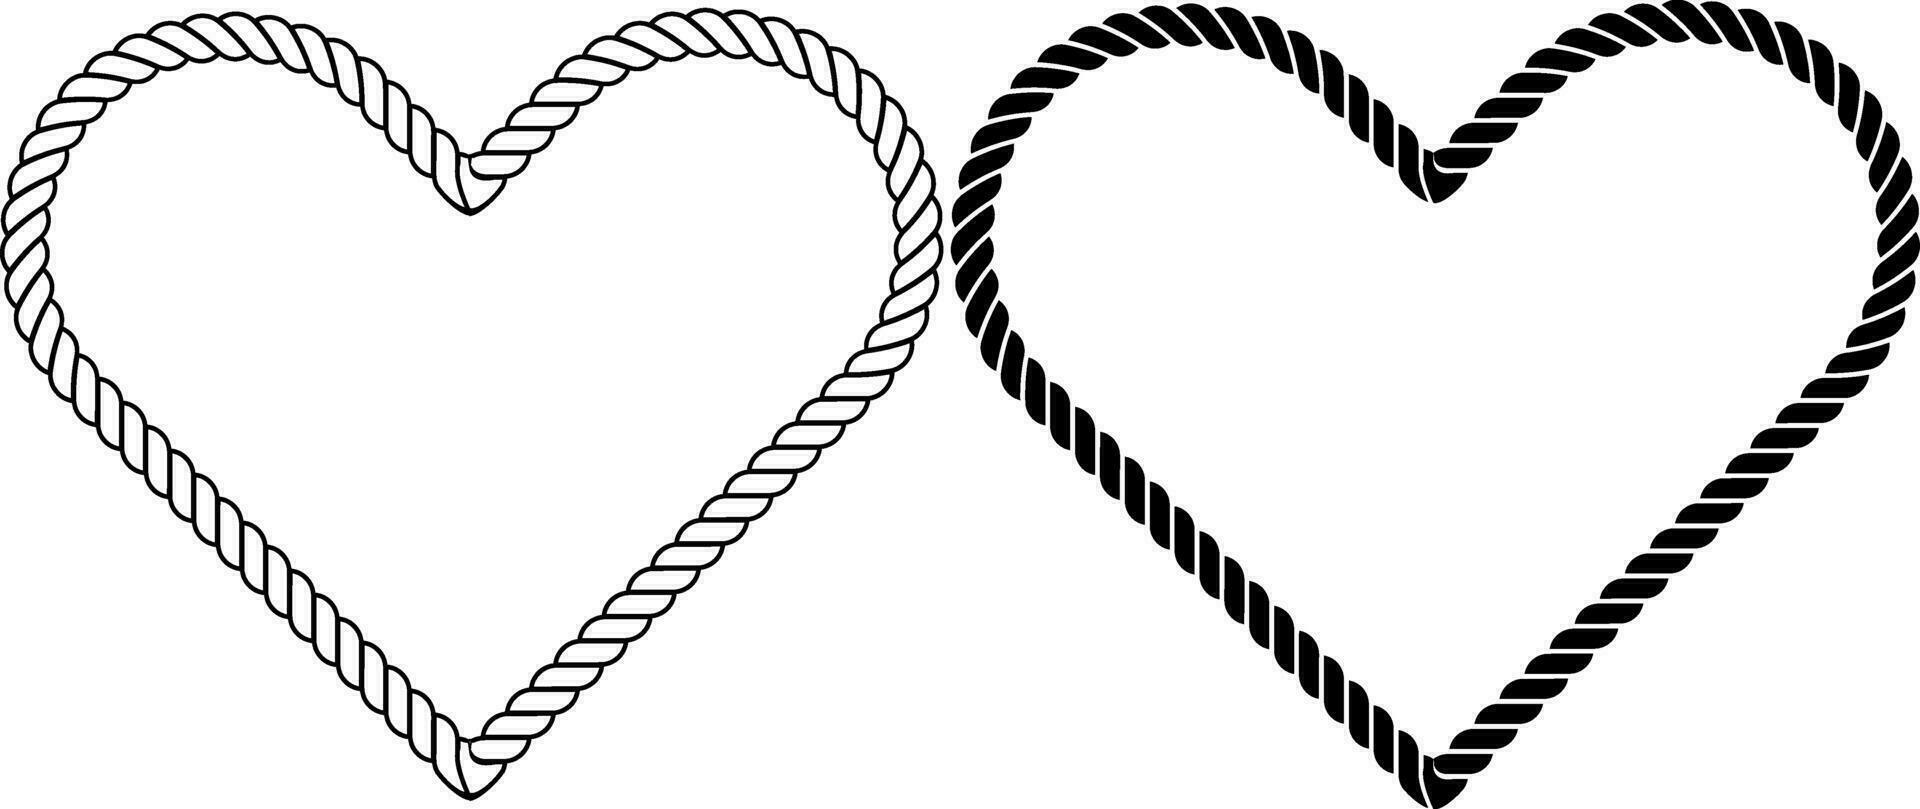 contorno silueta corazón forma cuerda marco vector